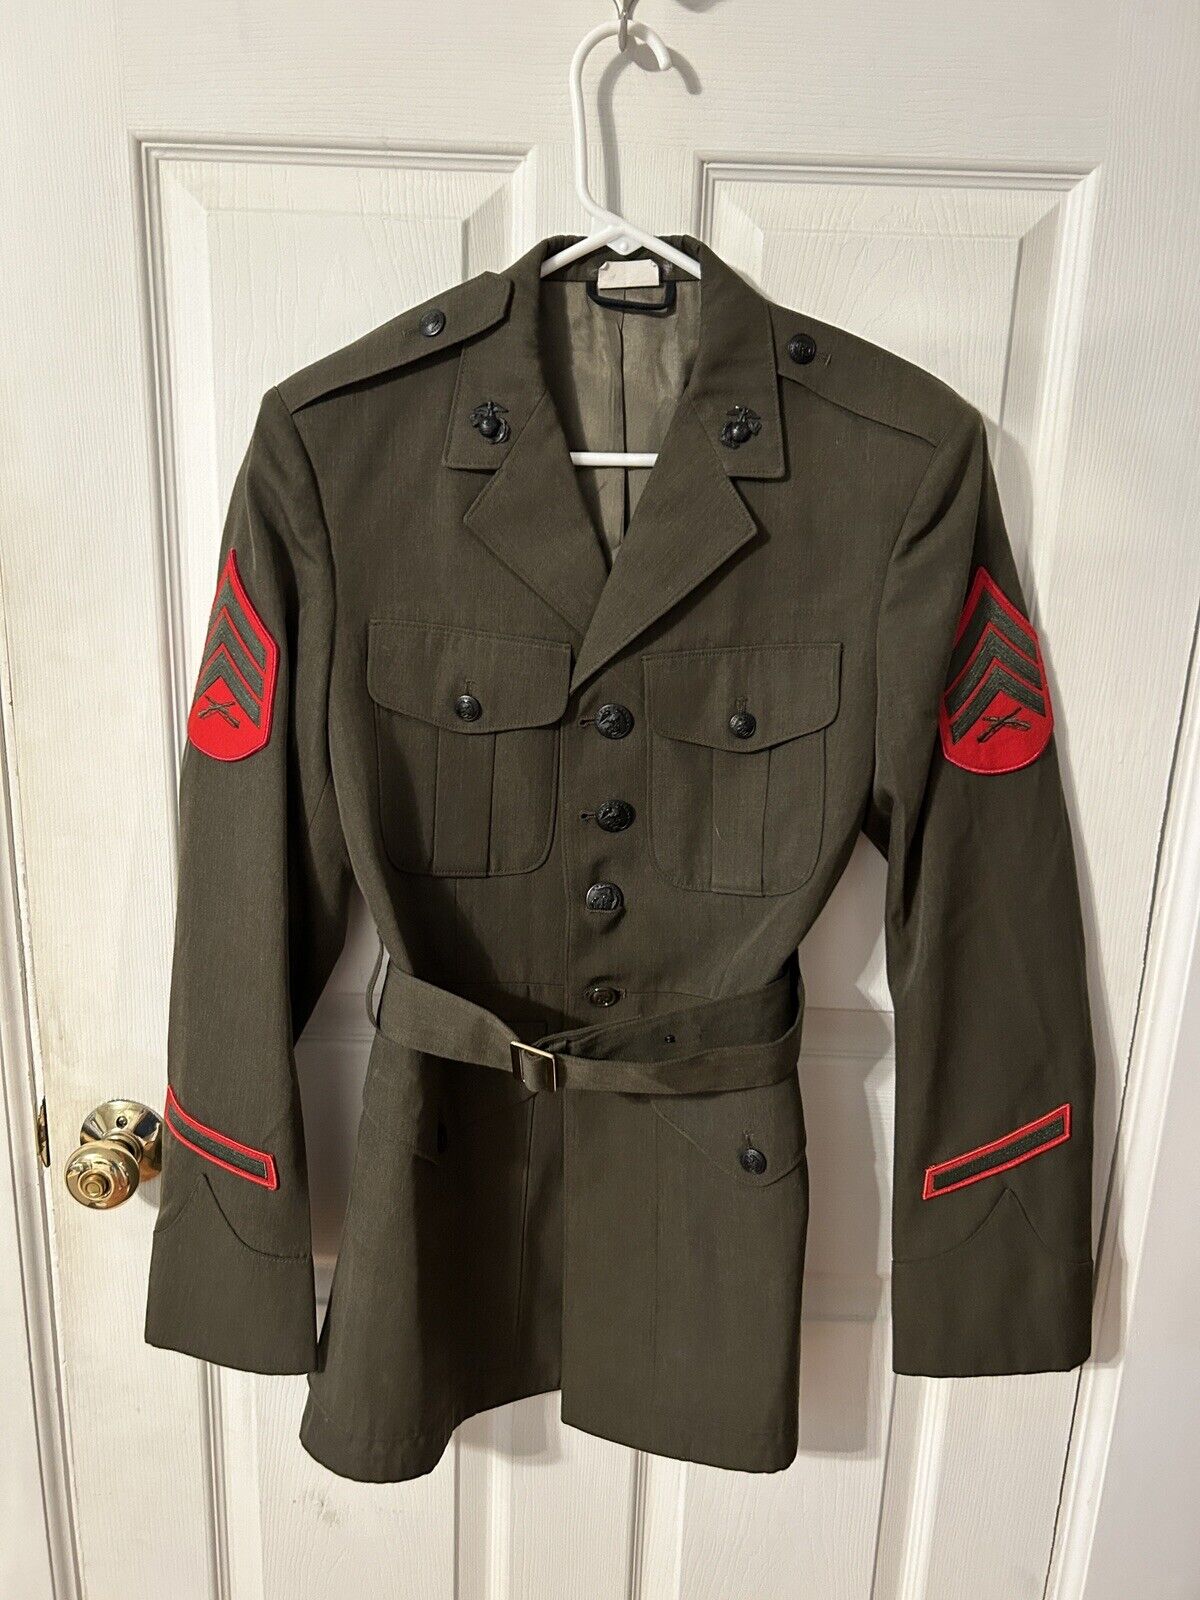 USMC Service Uniform “A” Jacket (38L) And Two Pair Trousers (33L)